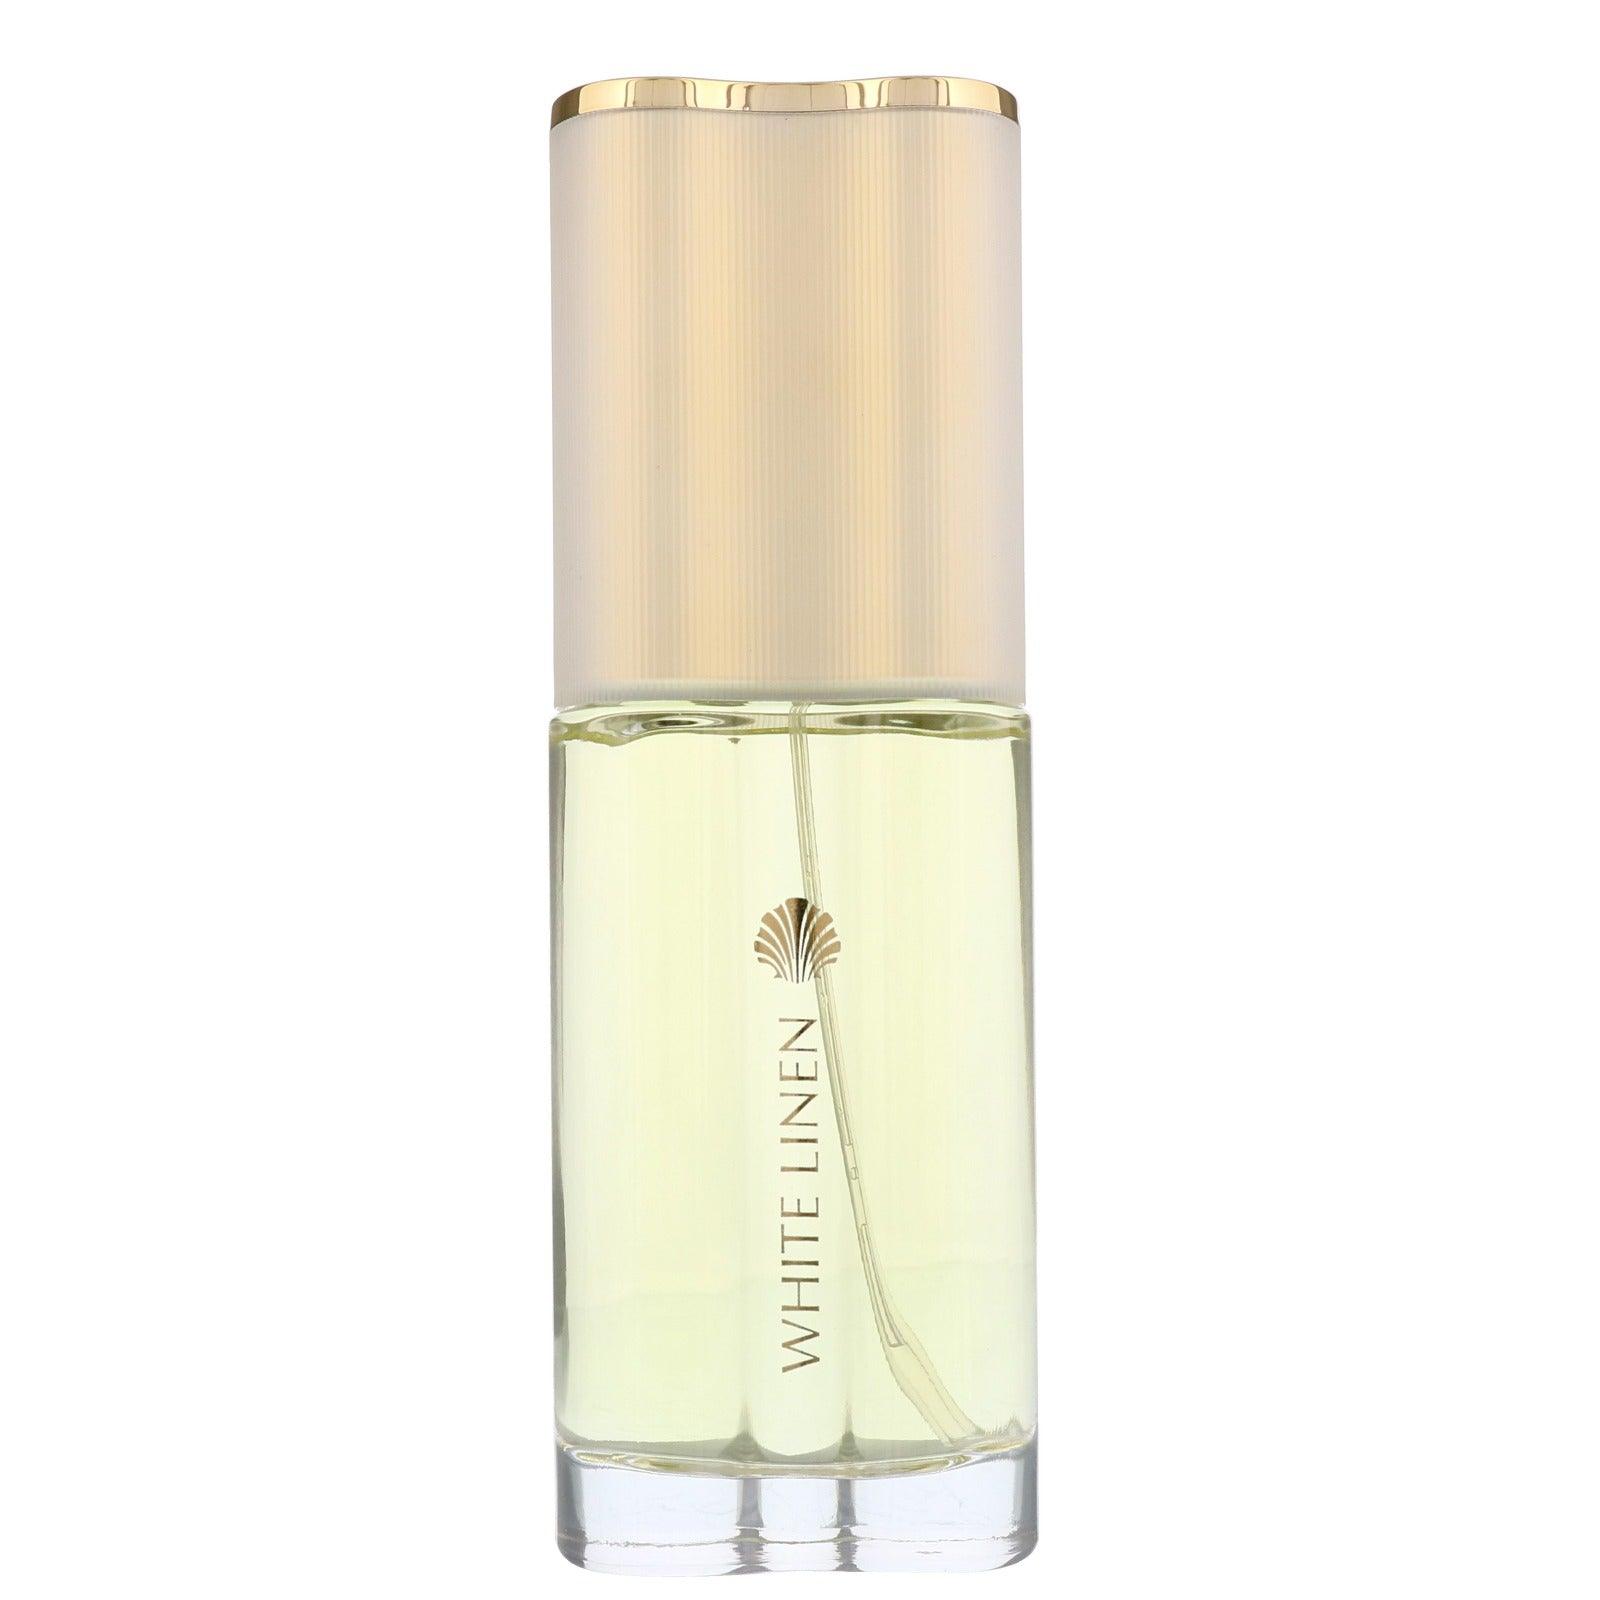 White Linen - Parfum Gallerie